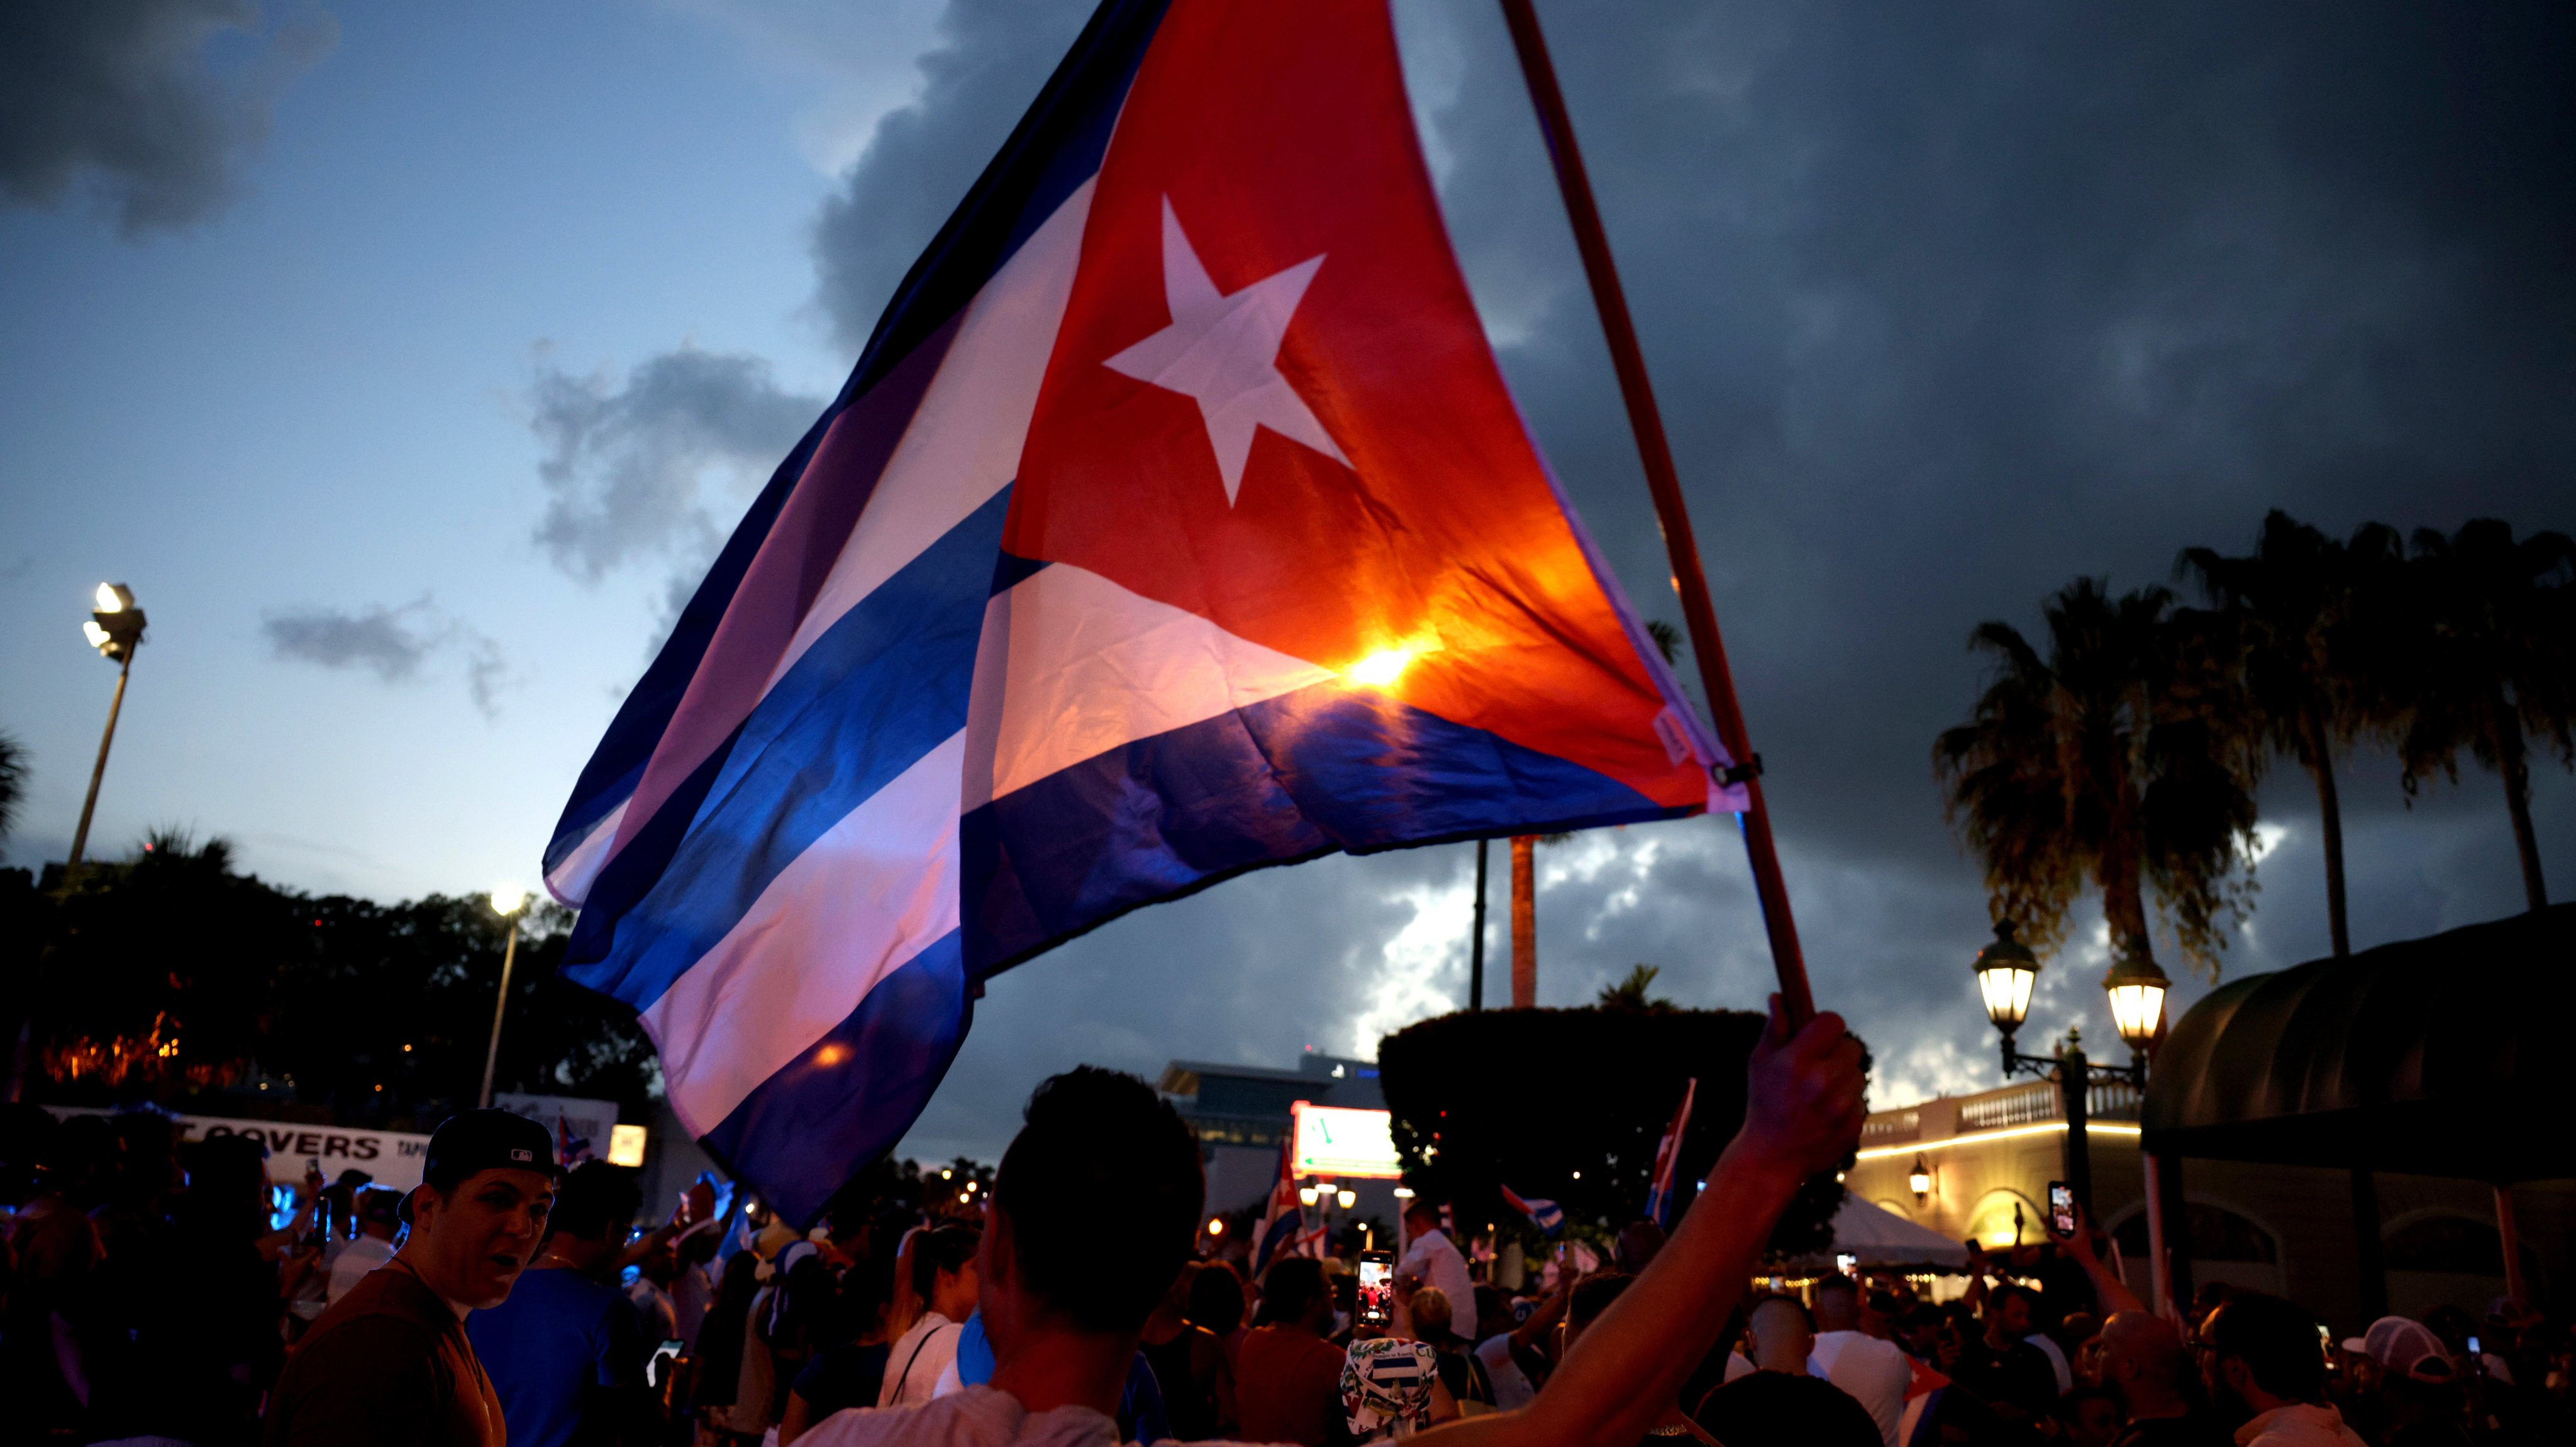 Movimento cubano 11 de julho dedica-se a alertar para o estado dos direitos humanos em Cuba